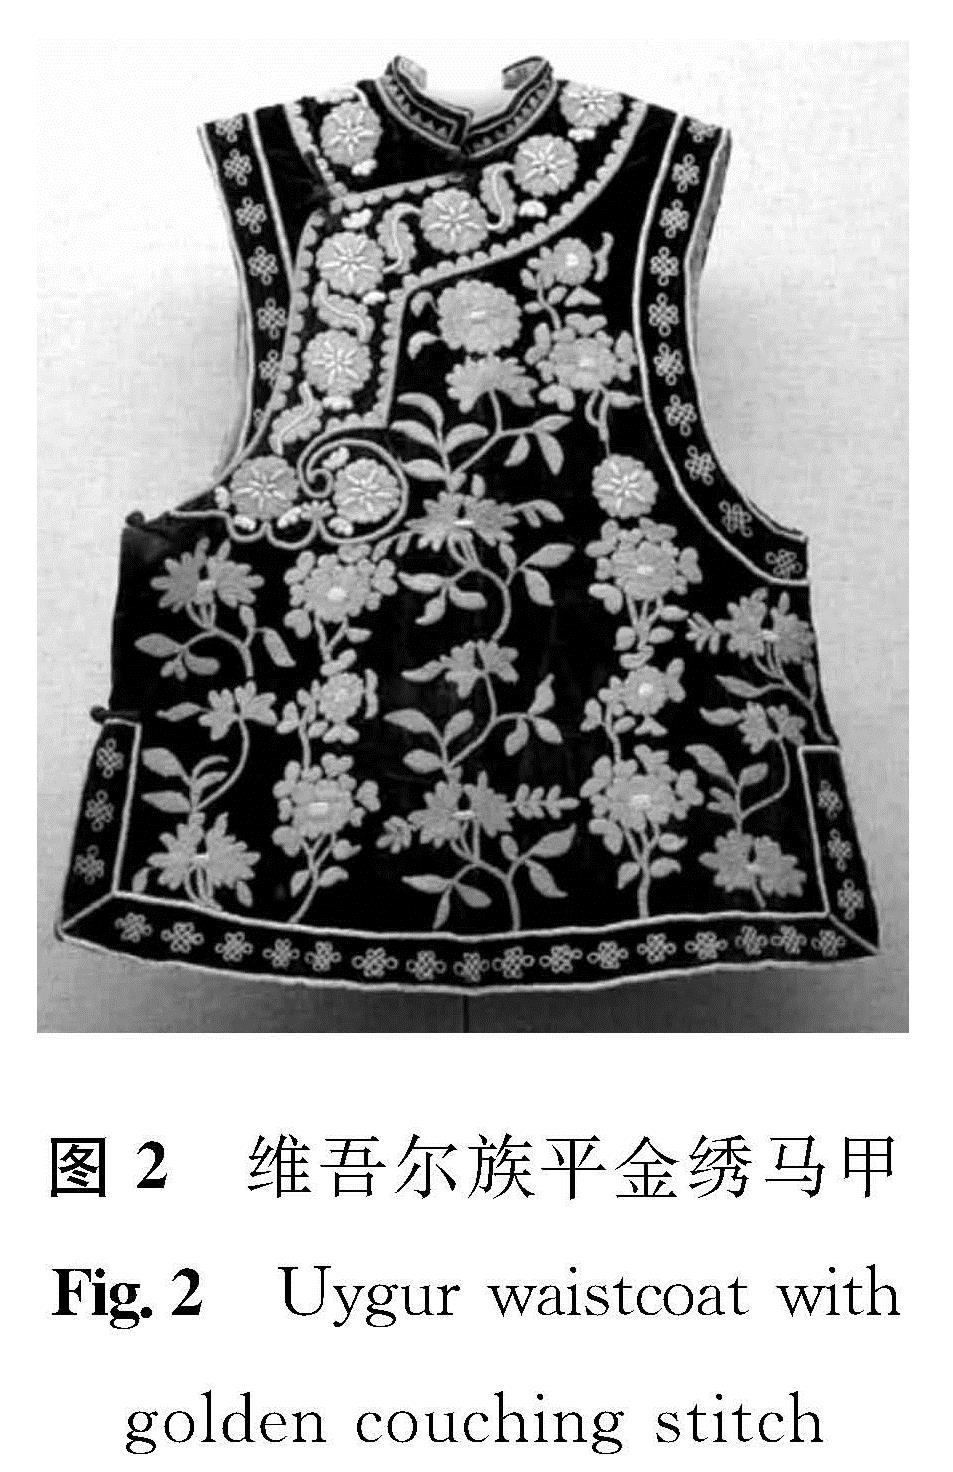 图2 维吾尔族平金绣马甲<br/>Fig.2 Uygur waistcoat with golden couching stitch